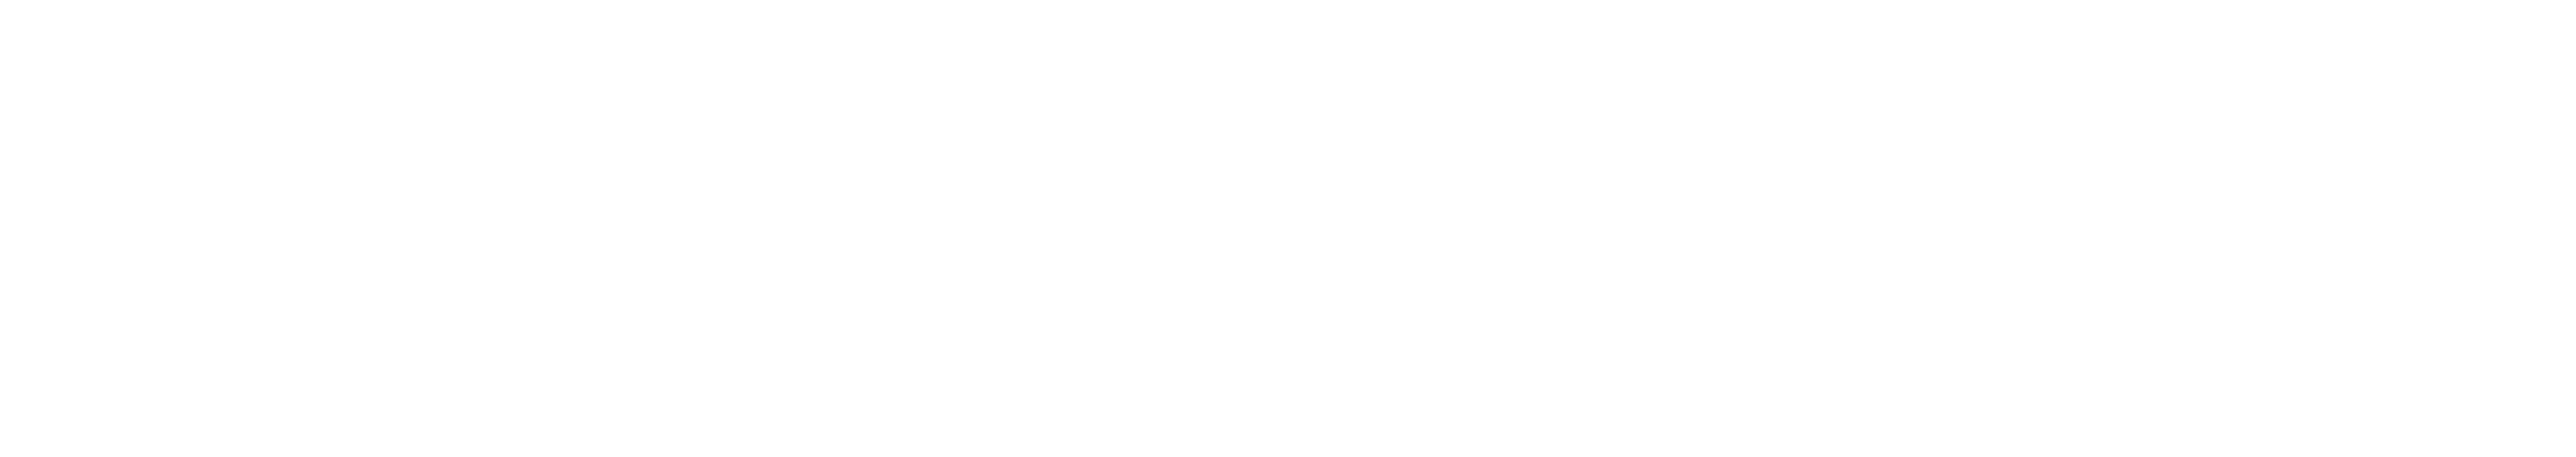 Newz Group White Logo